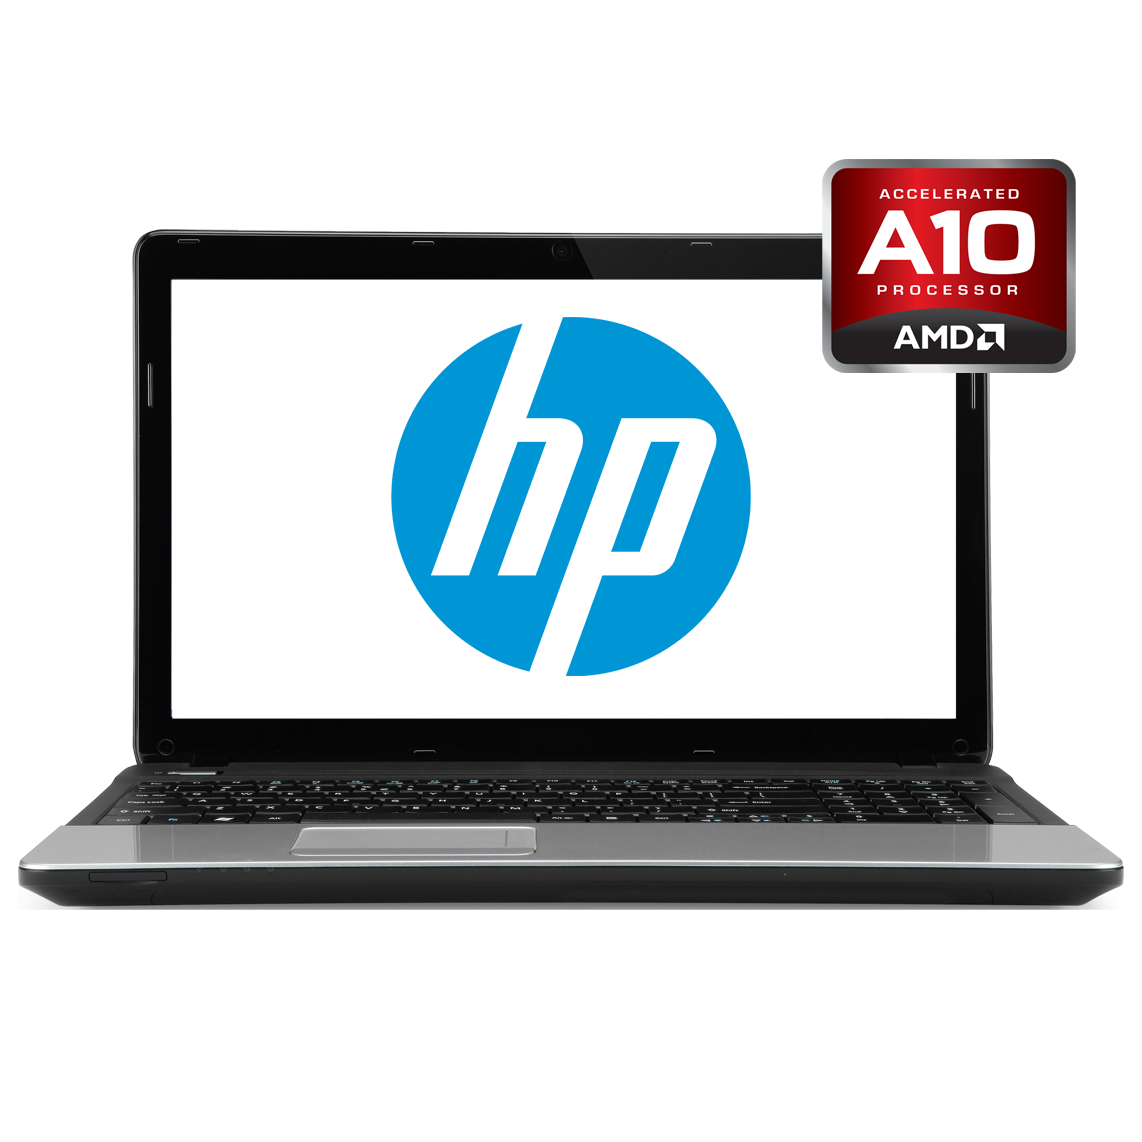 HP - 13 inch AMD A10